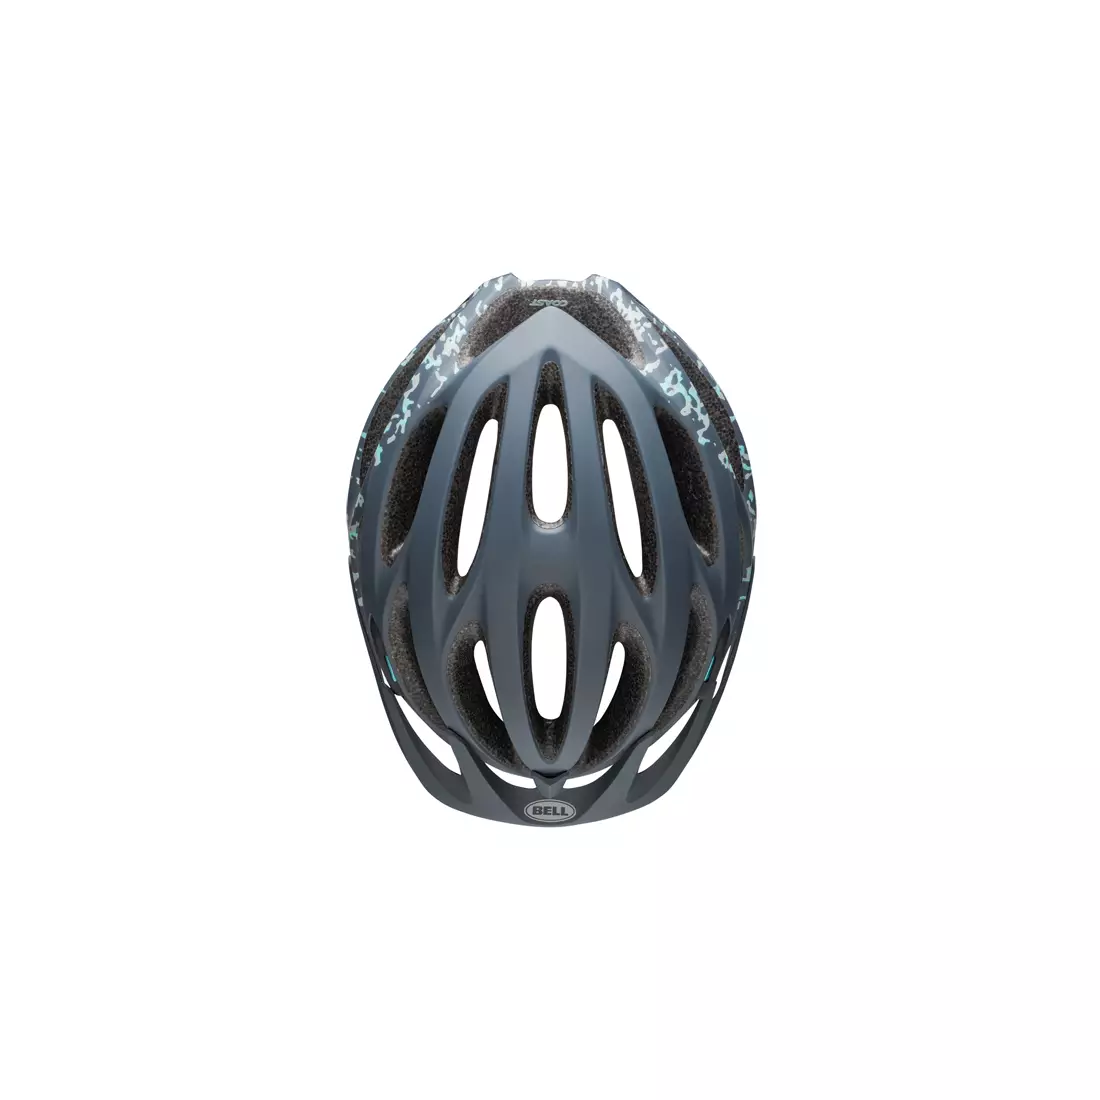 BELL MTB COAST JOY RIDE BEL-7088746 women's bicycle helmet matte lead stone